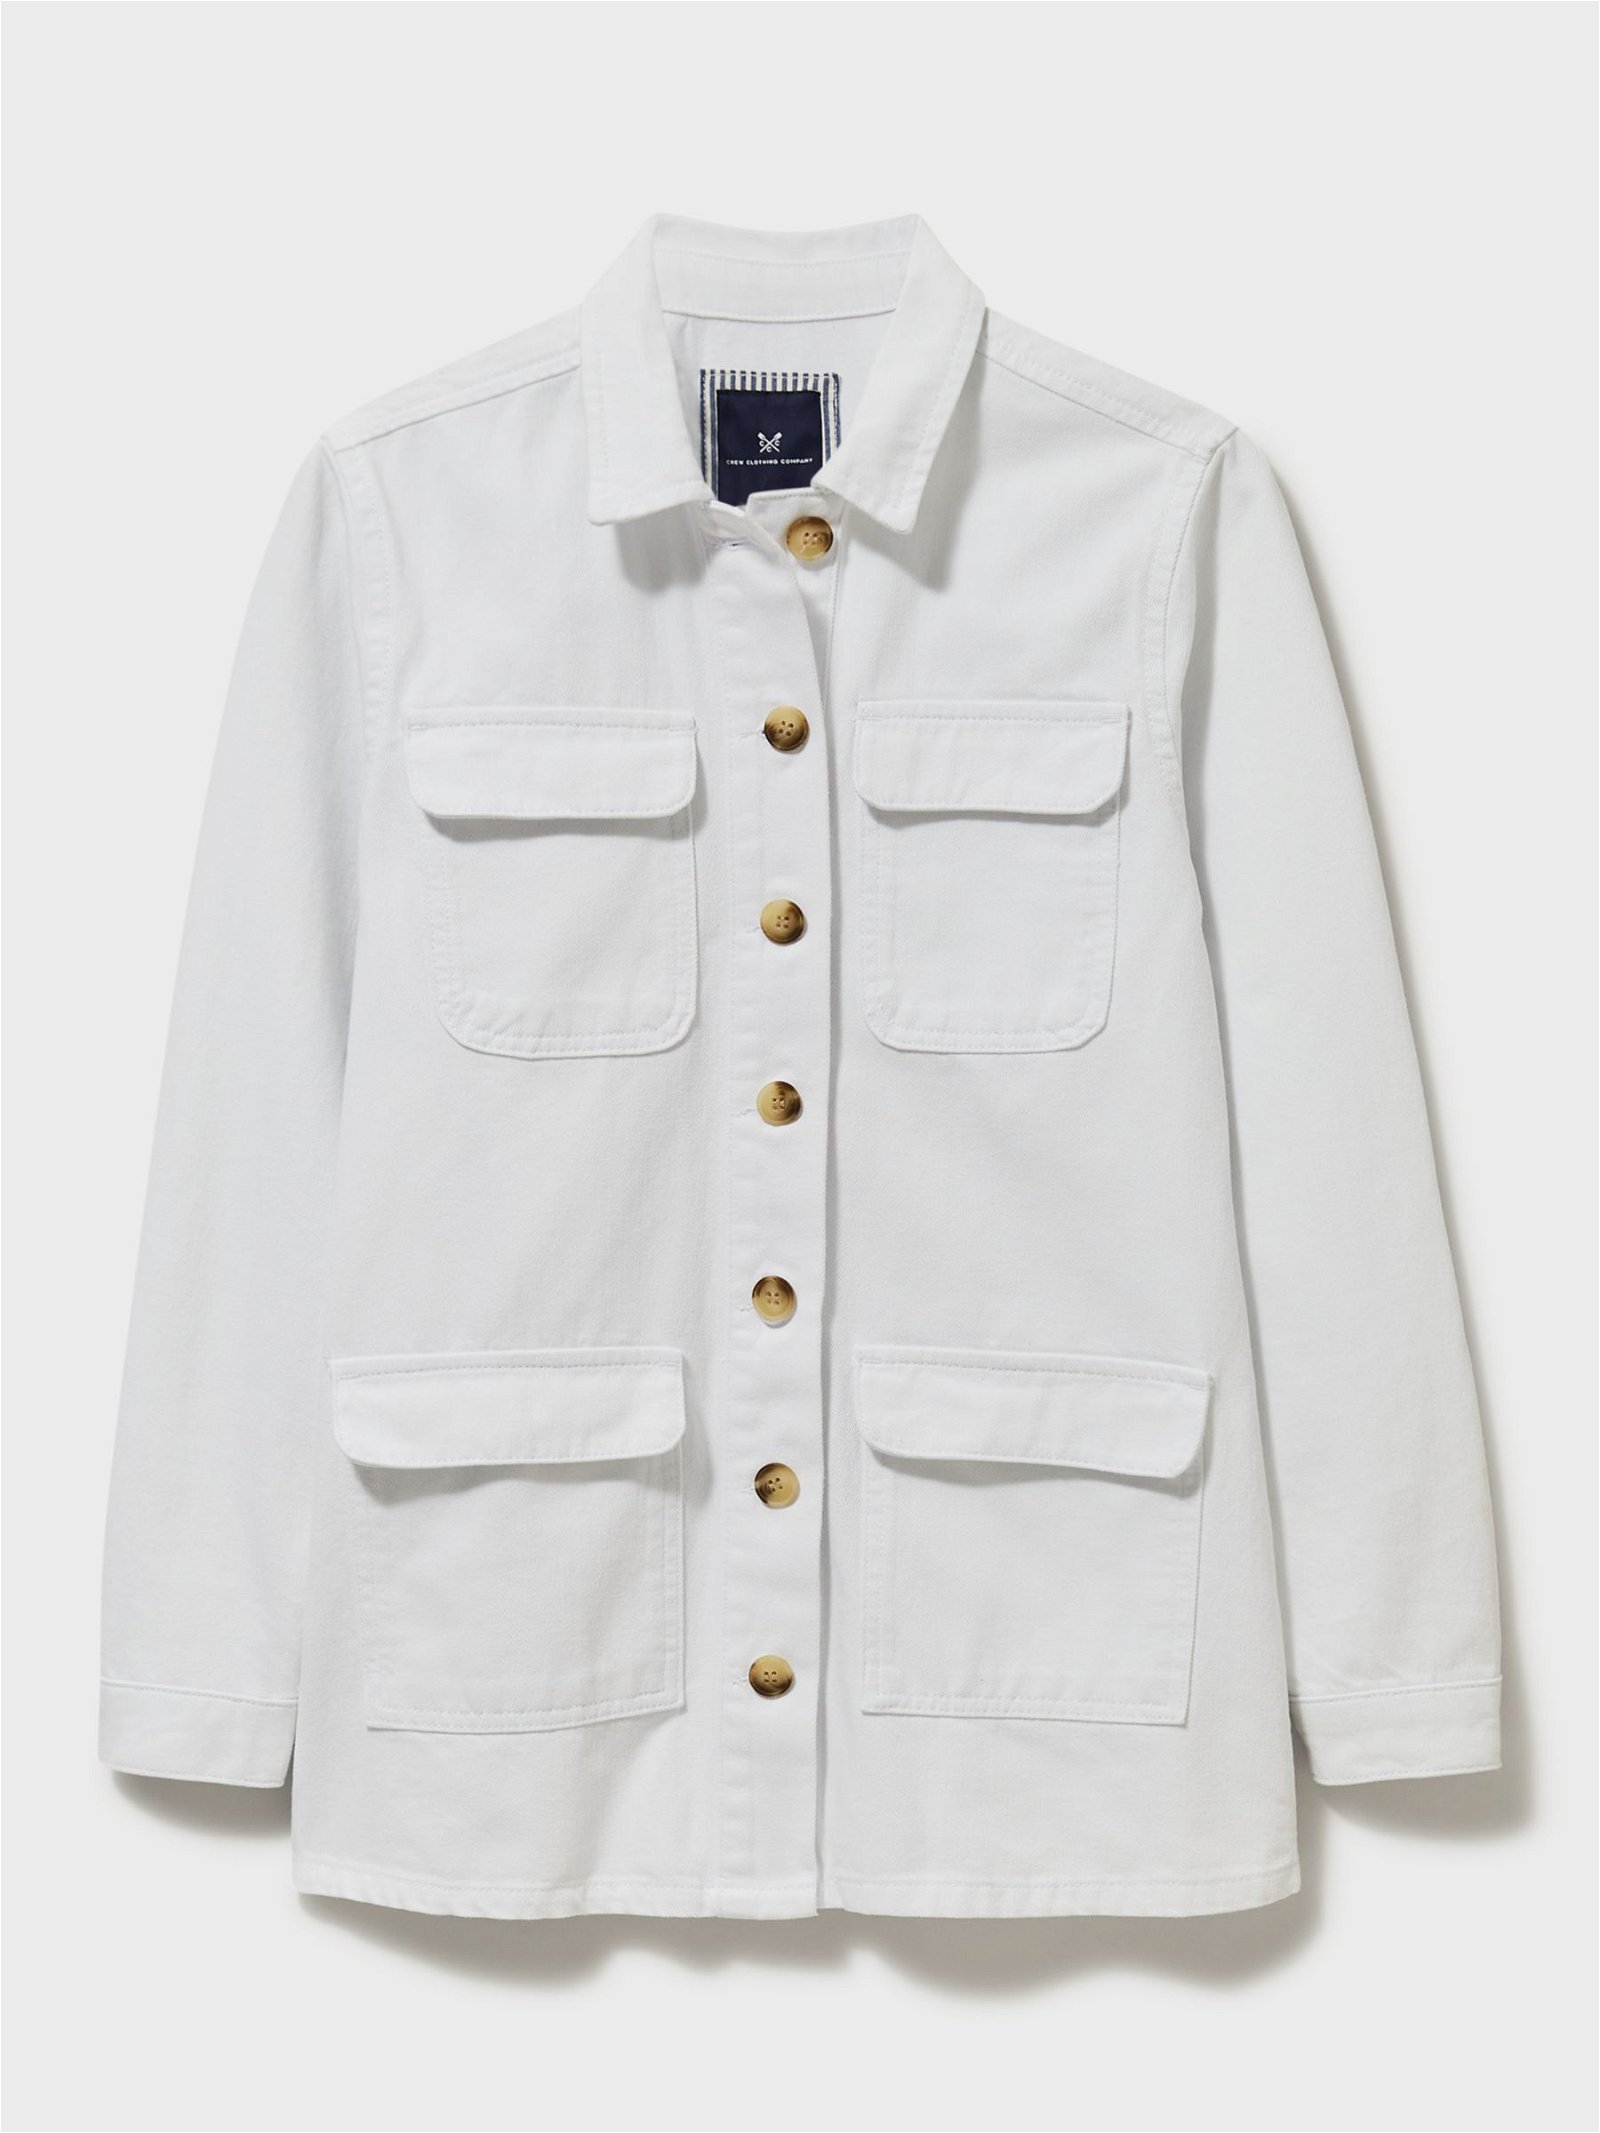 Women's Clothing - GenesinlifeShops - NHILLC1 denim jacket, White Lonsdale  Kaber Shirt Met Korte Mouwen